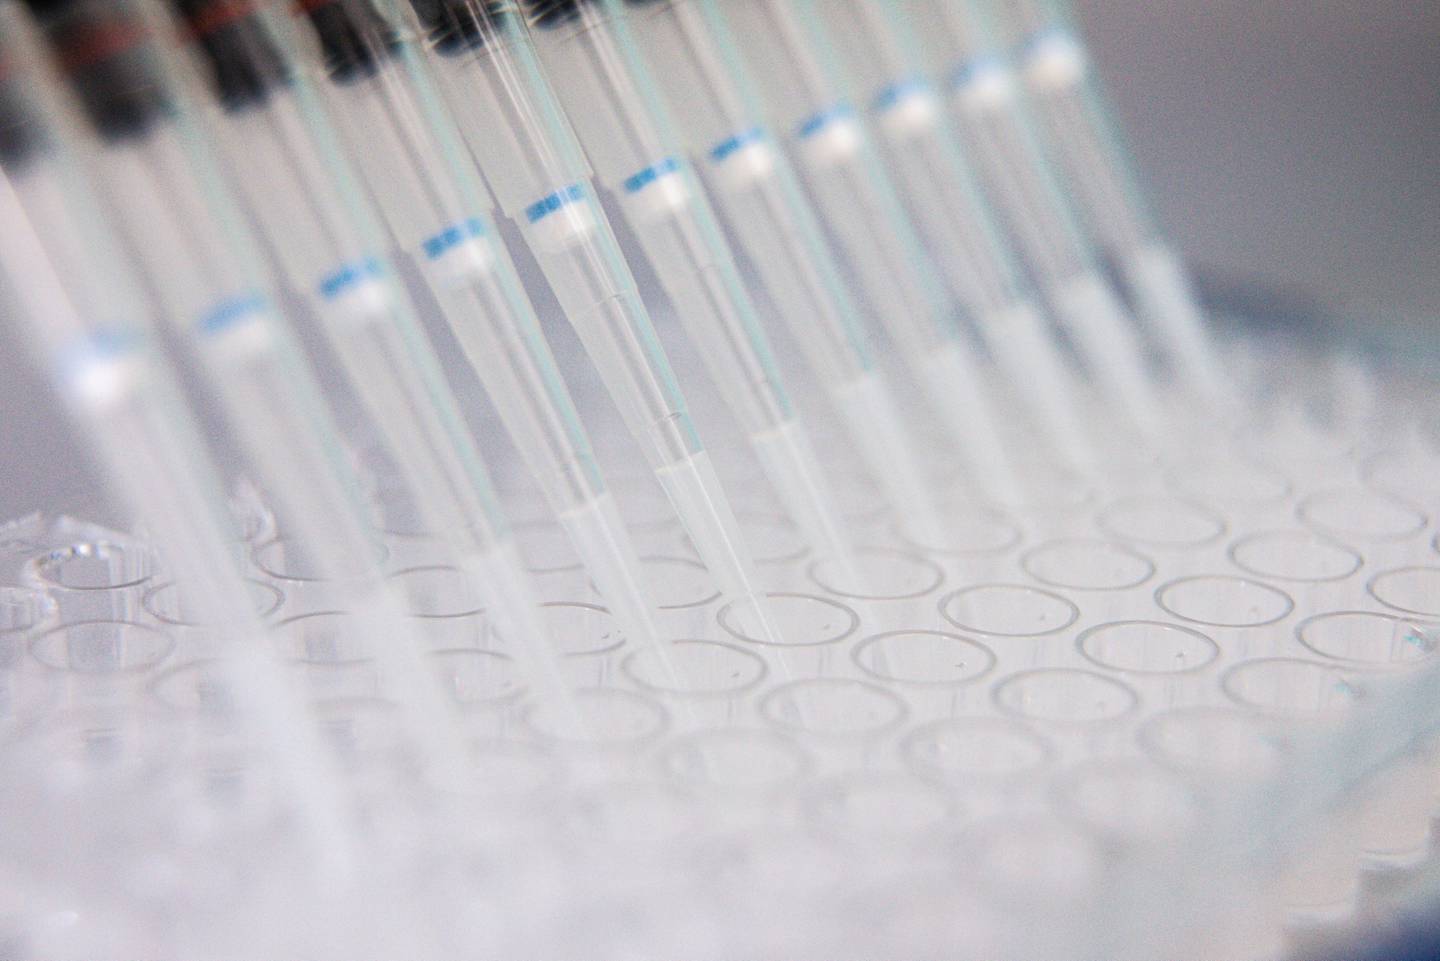 Un técnico de laboratorio utiliza un gotero multicanal durante el proceso de cuantificación de antígenos de la investigación de la vacuna contra el coronavirus en los laboratorios de Valneva SA en Viena, Austria, el jueves 6 de agosto de 2020.  Fotógrafo: Akos Stiller/Bloomberg